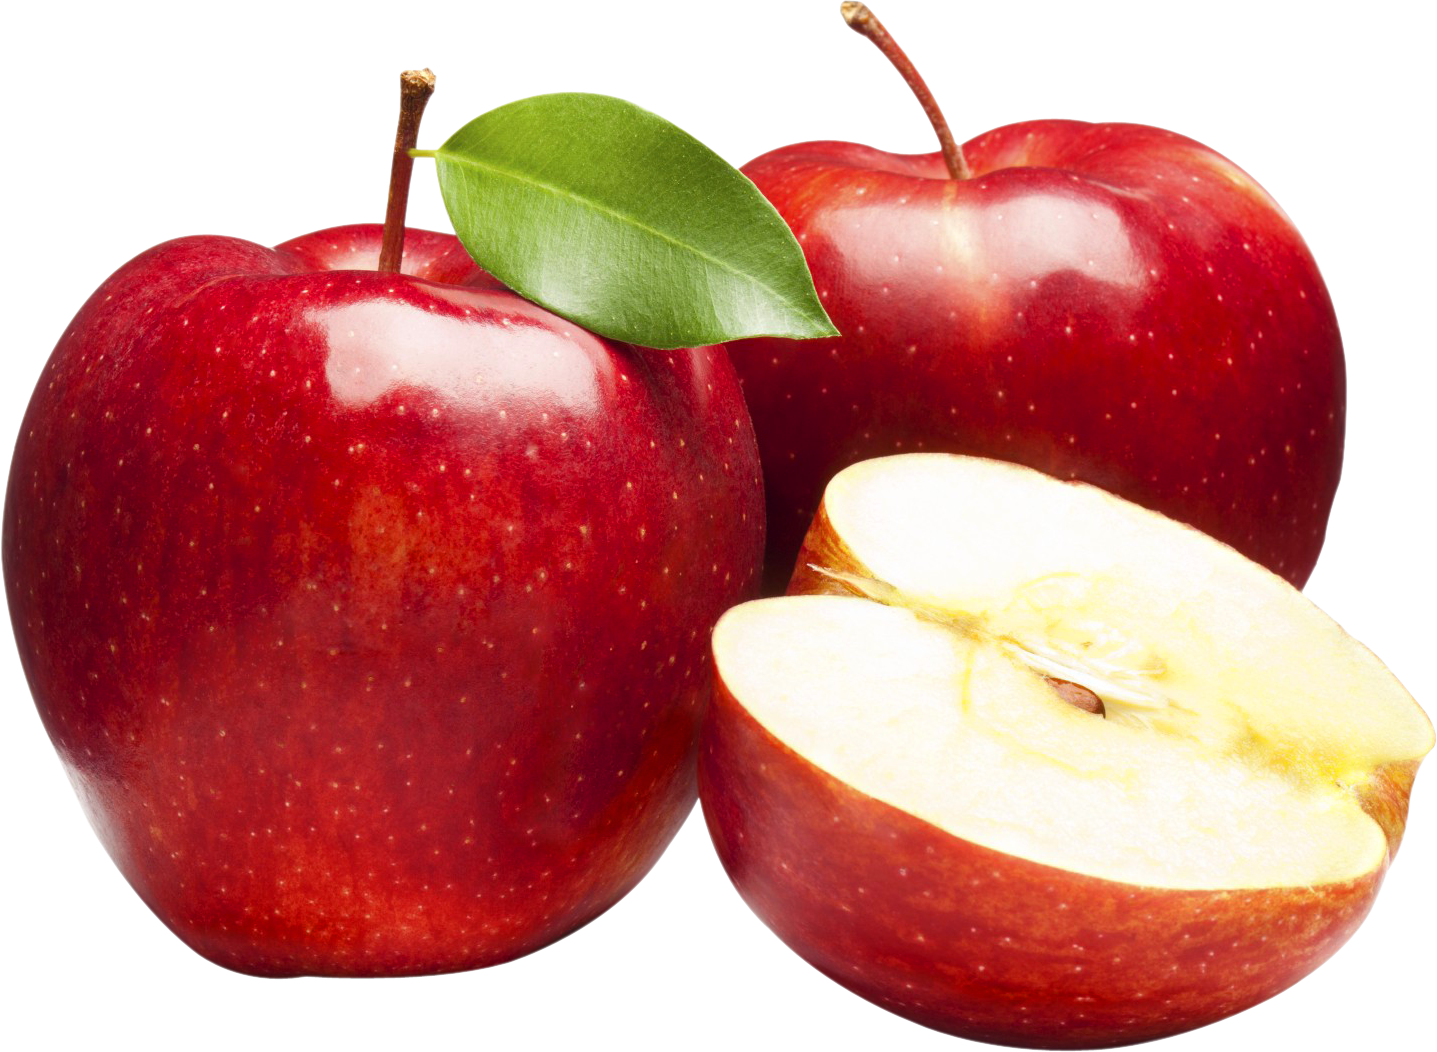 Immagine di alta qualità della frutta della mela rossa